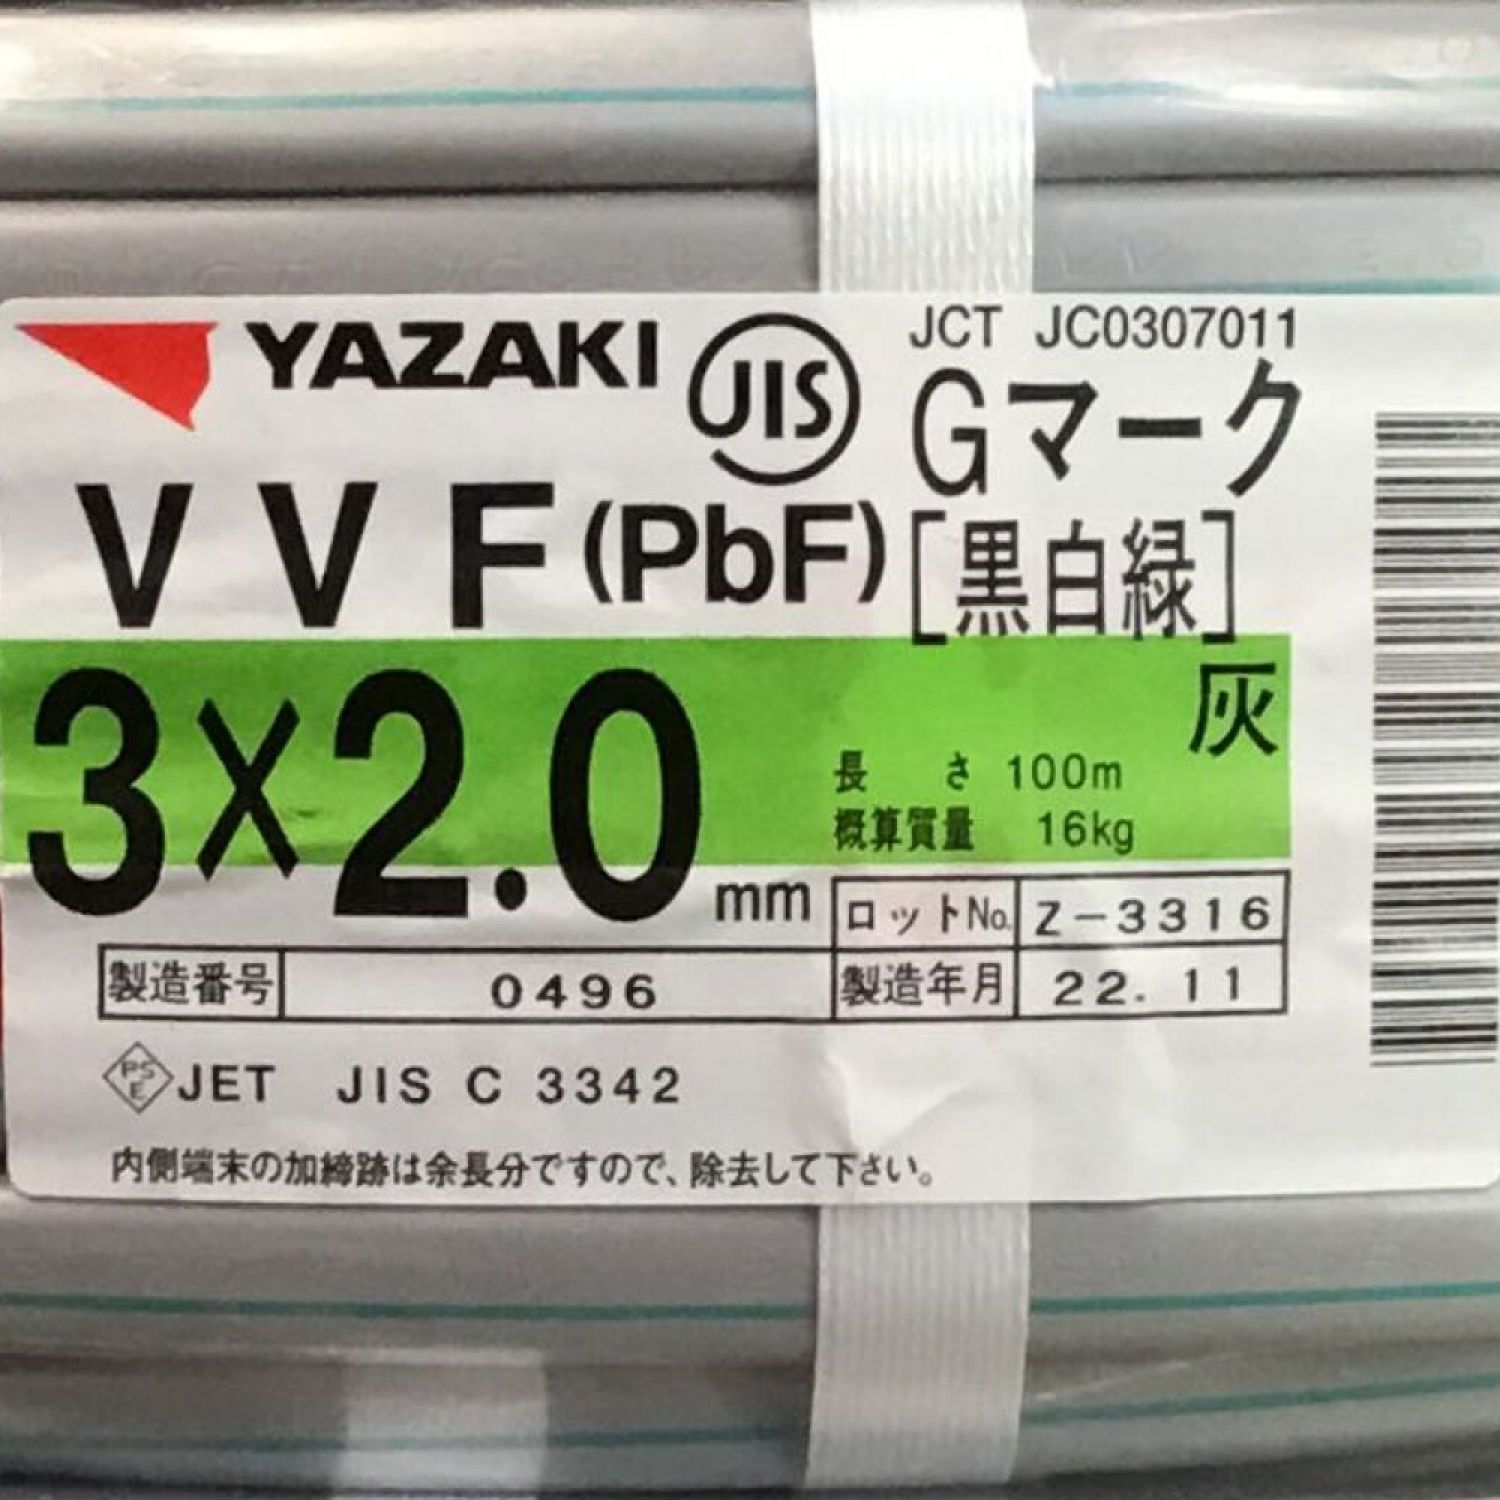 矢崎 YAZAKI VVFケーブル 3×2.0mm Gマーク（黒白緑） 未使用品 ① Sランク